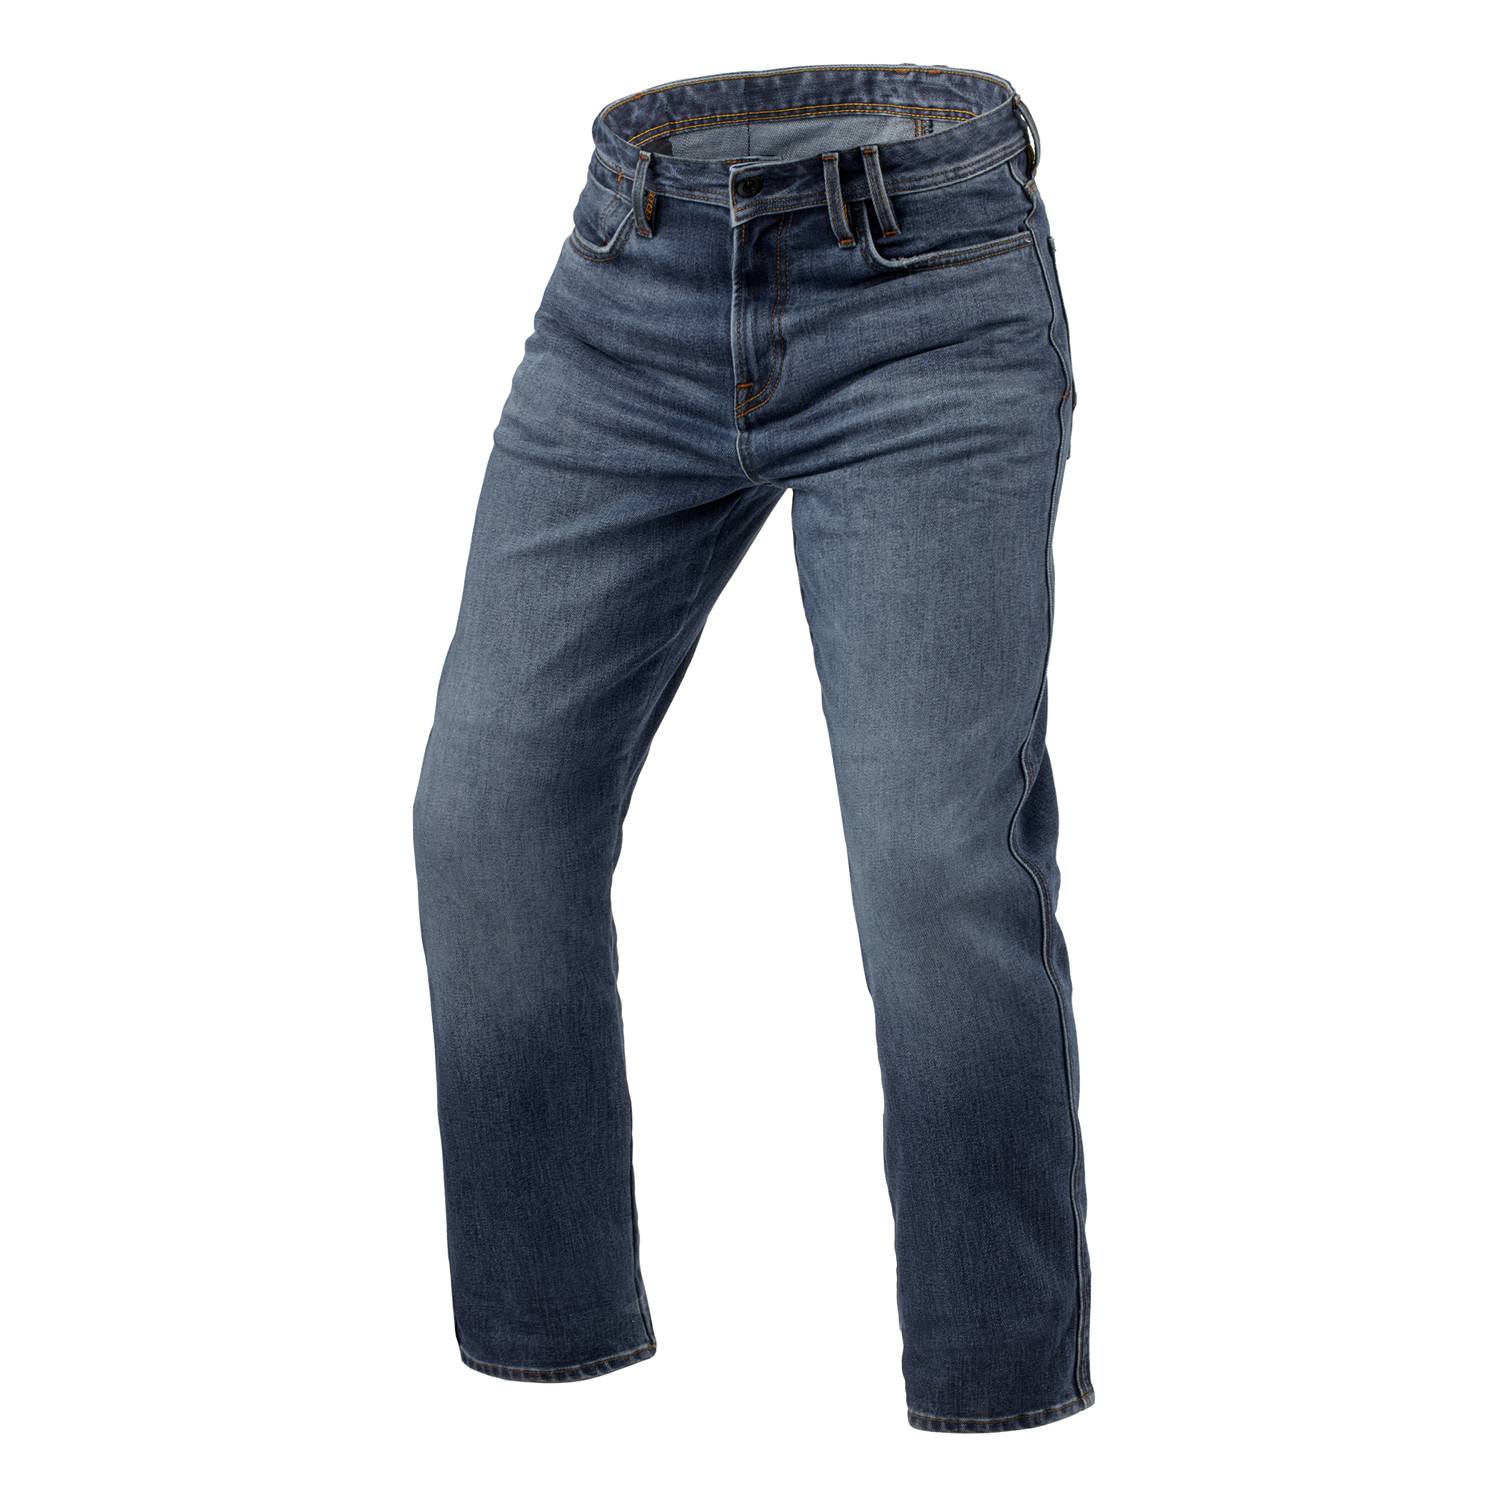 Image of REV'IT! Jeans Lombard 3 RF Mid Blue Stone L32 Motorcycle Jeans Size L32/W32 EN